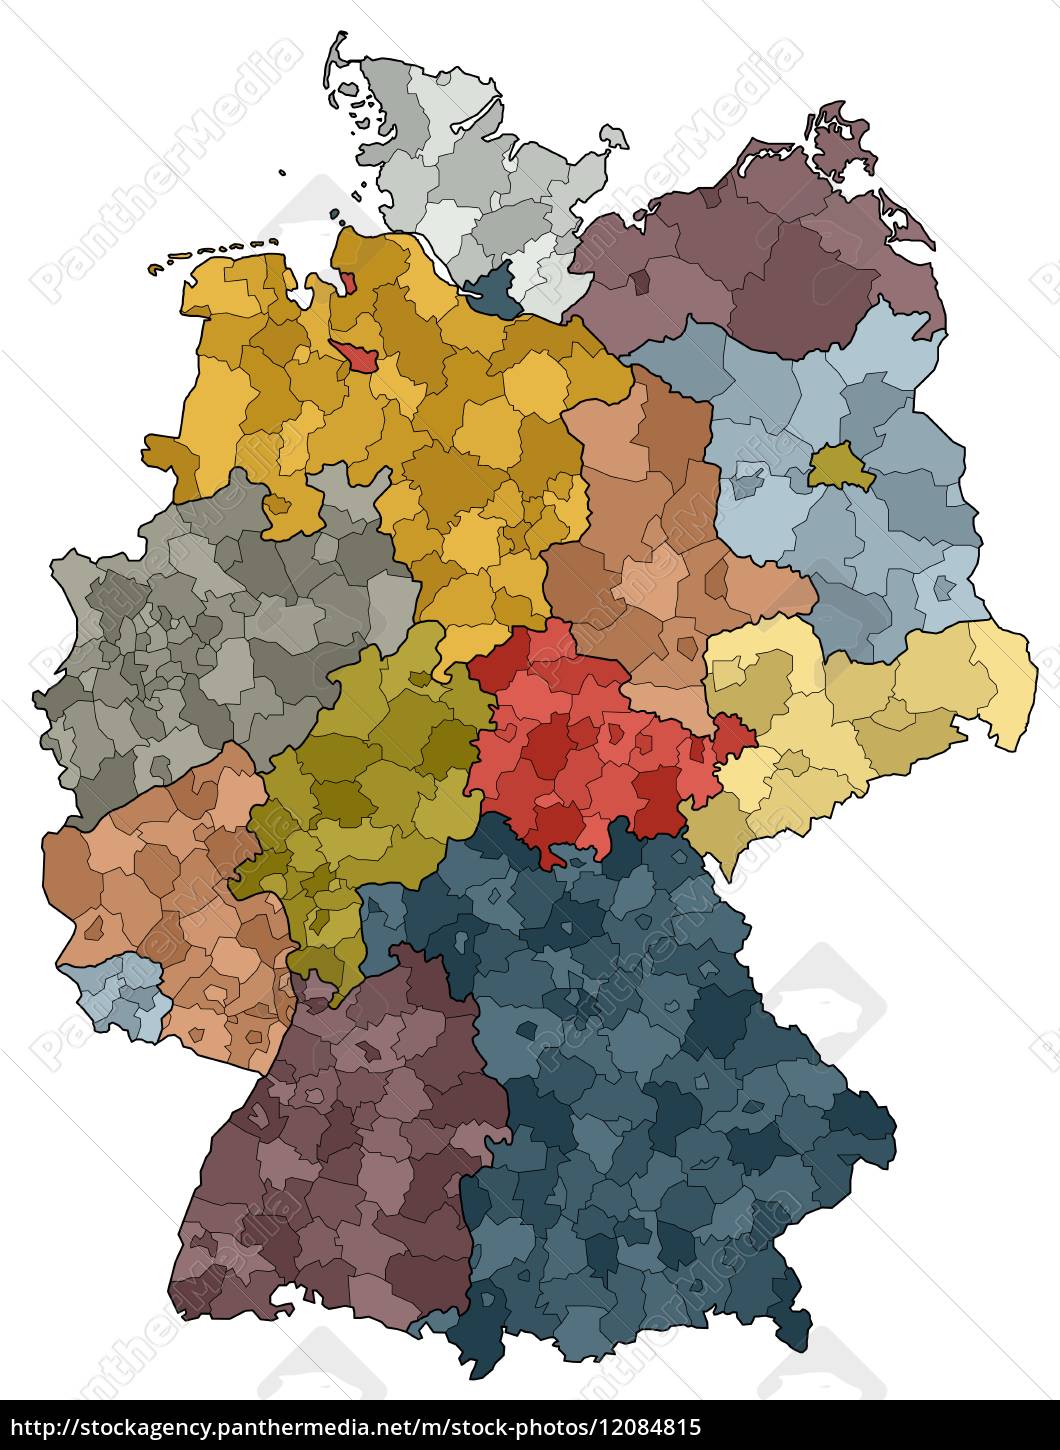 Deutschlandkarte - Bundesländer und Landkreise - Lizenzfreies Bild